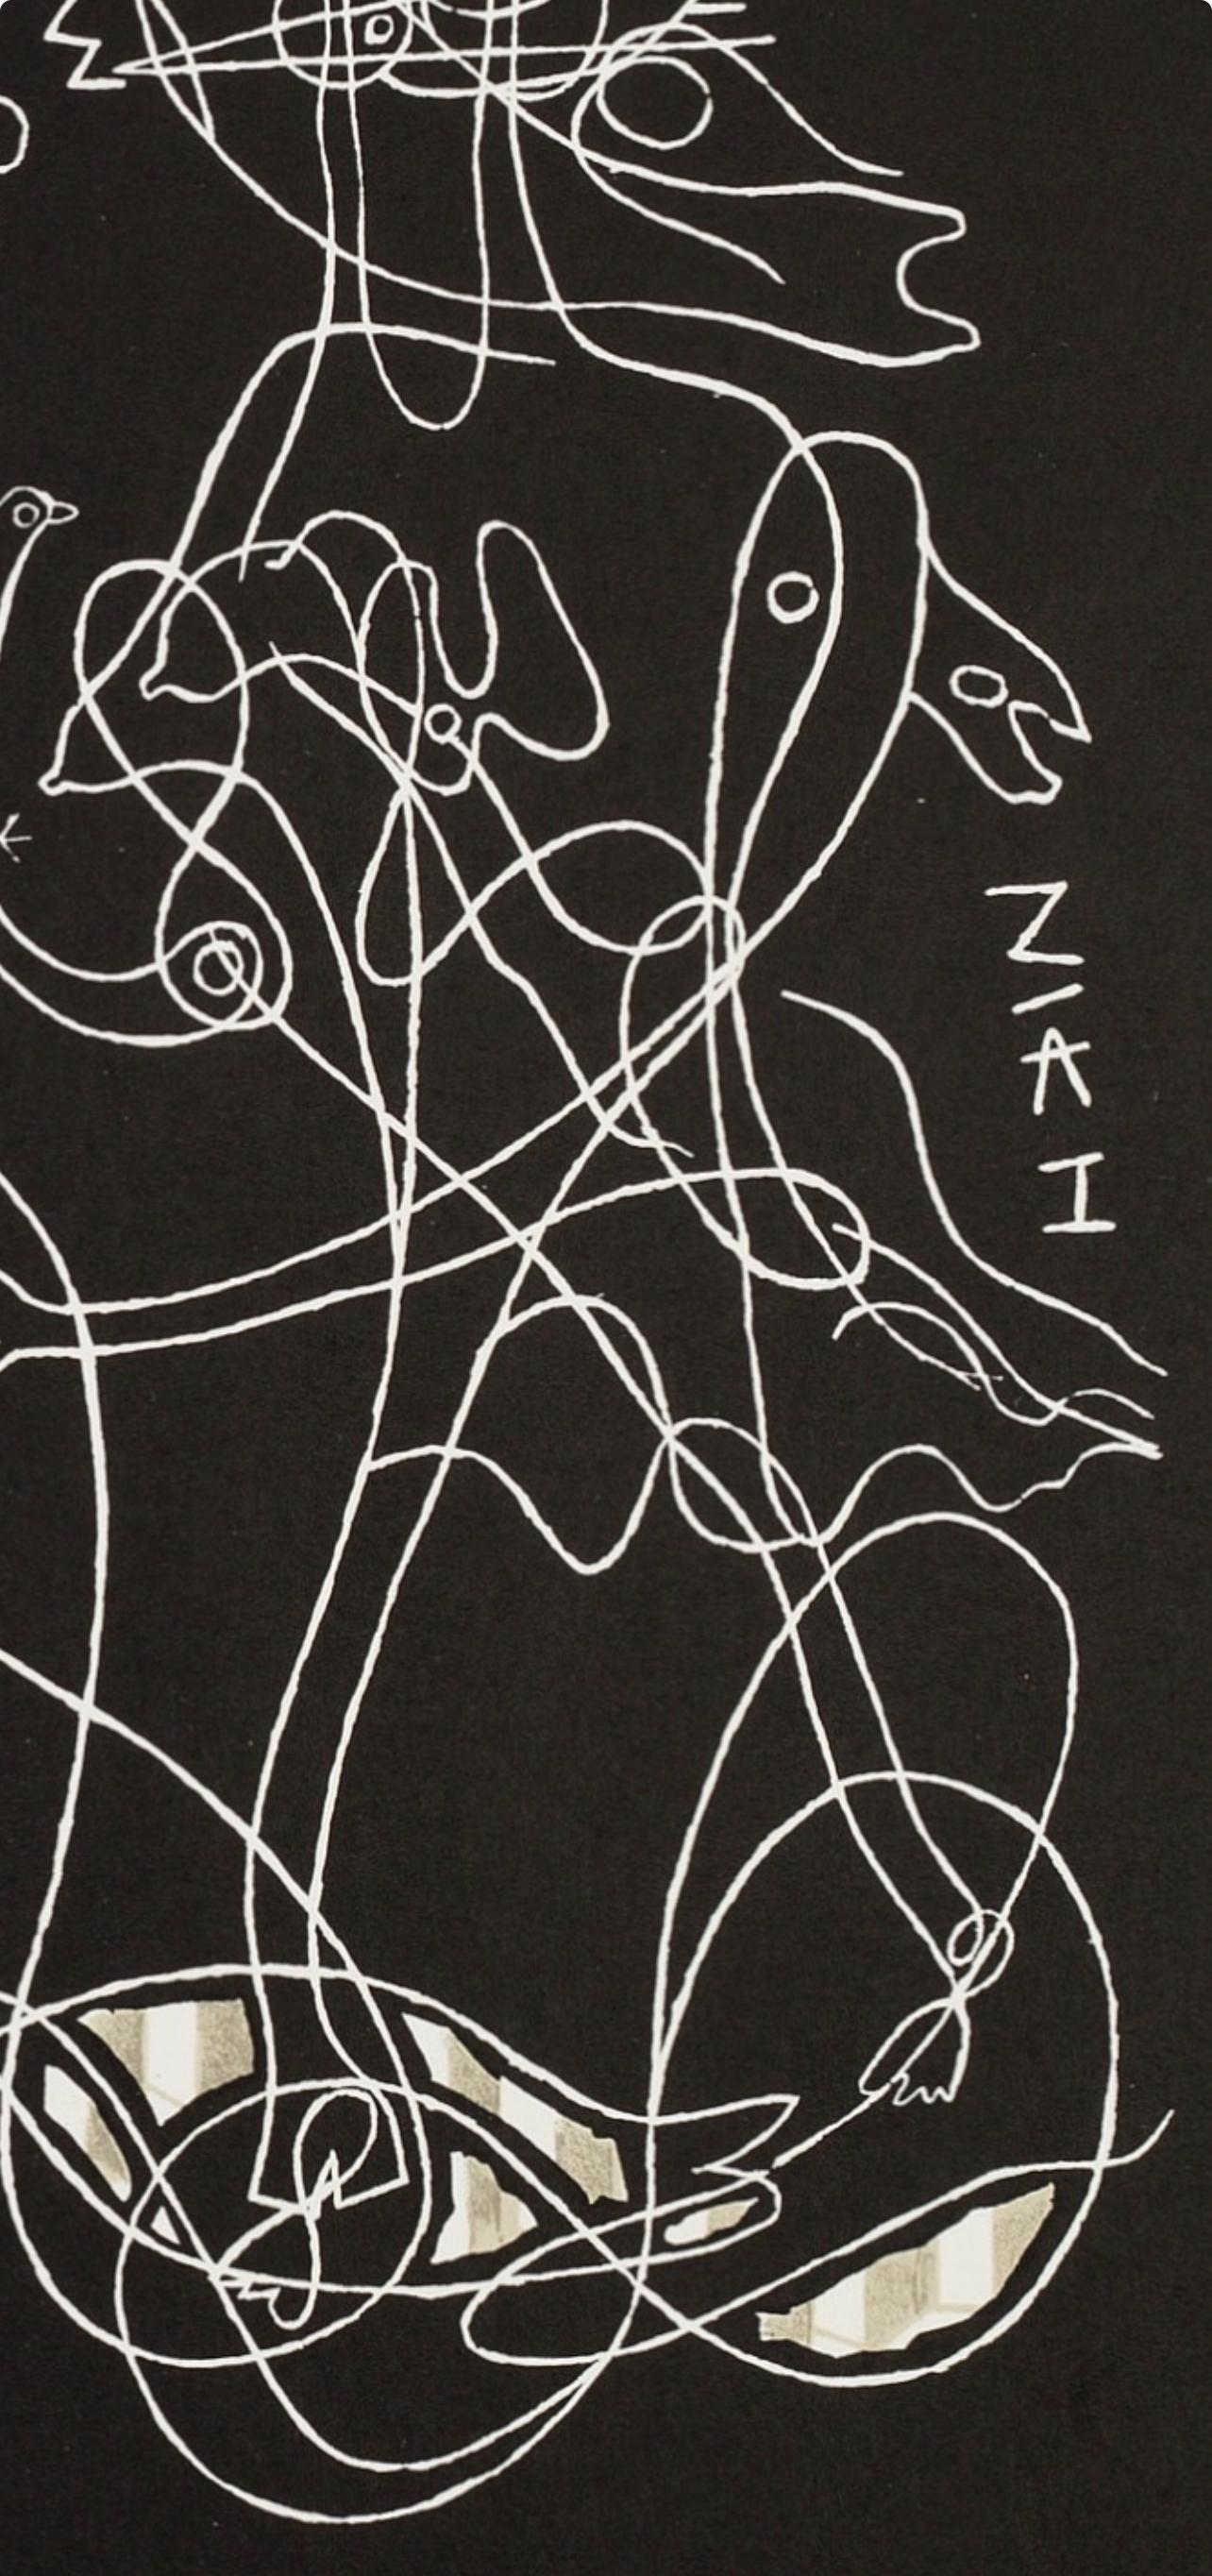 Braque, Zelos, Derrière le miroir (after) - Modern Print by Georges Braque